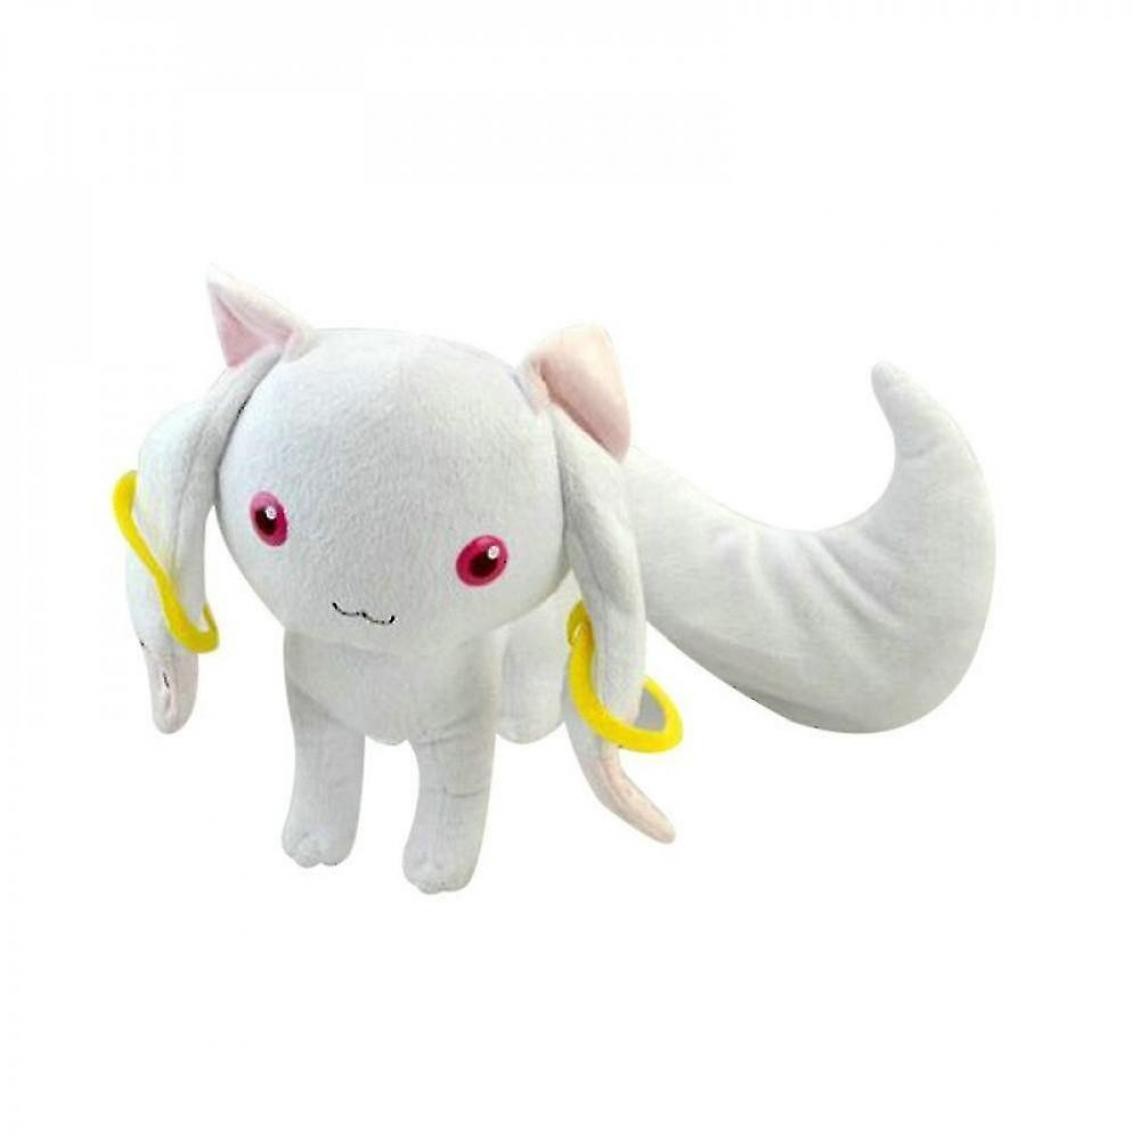 Universal - Animaux en peluche 23cm magi peluche eBay chat douce poupée en peluche fille anniversaire cadeau de noël pour les enfants(blanche) - Doudous